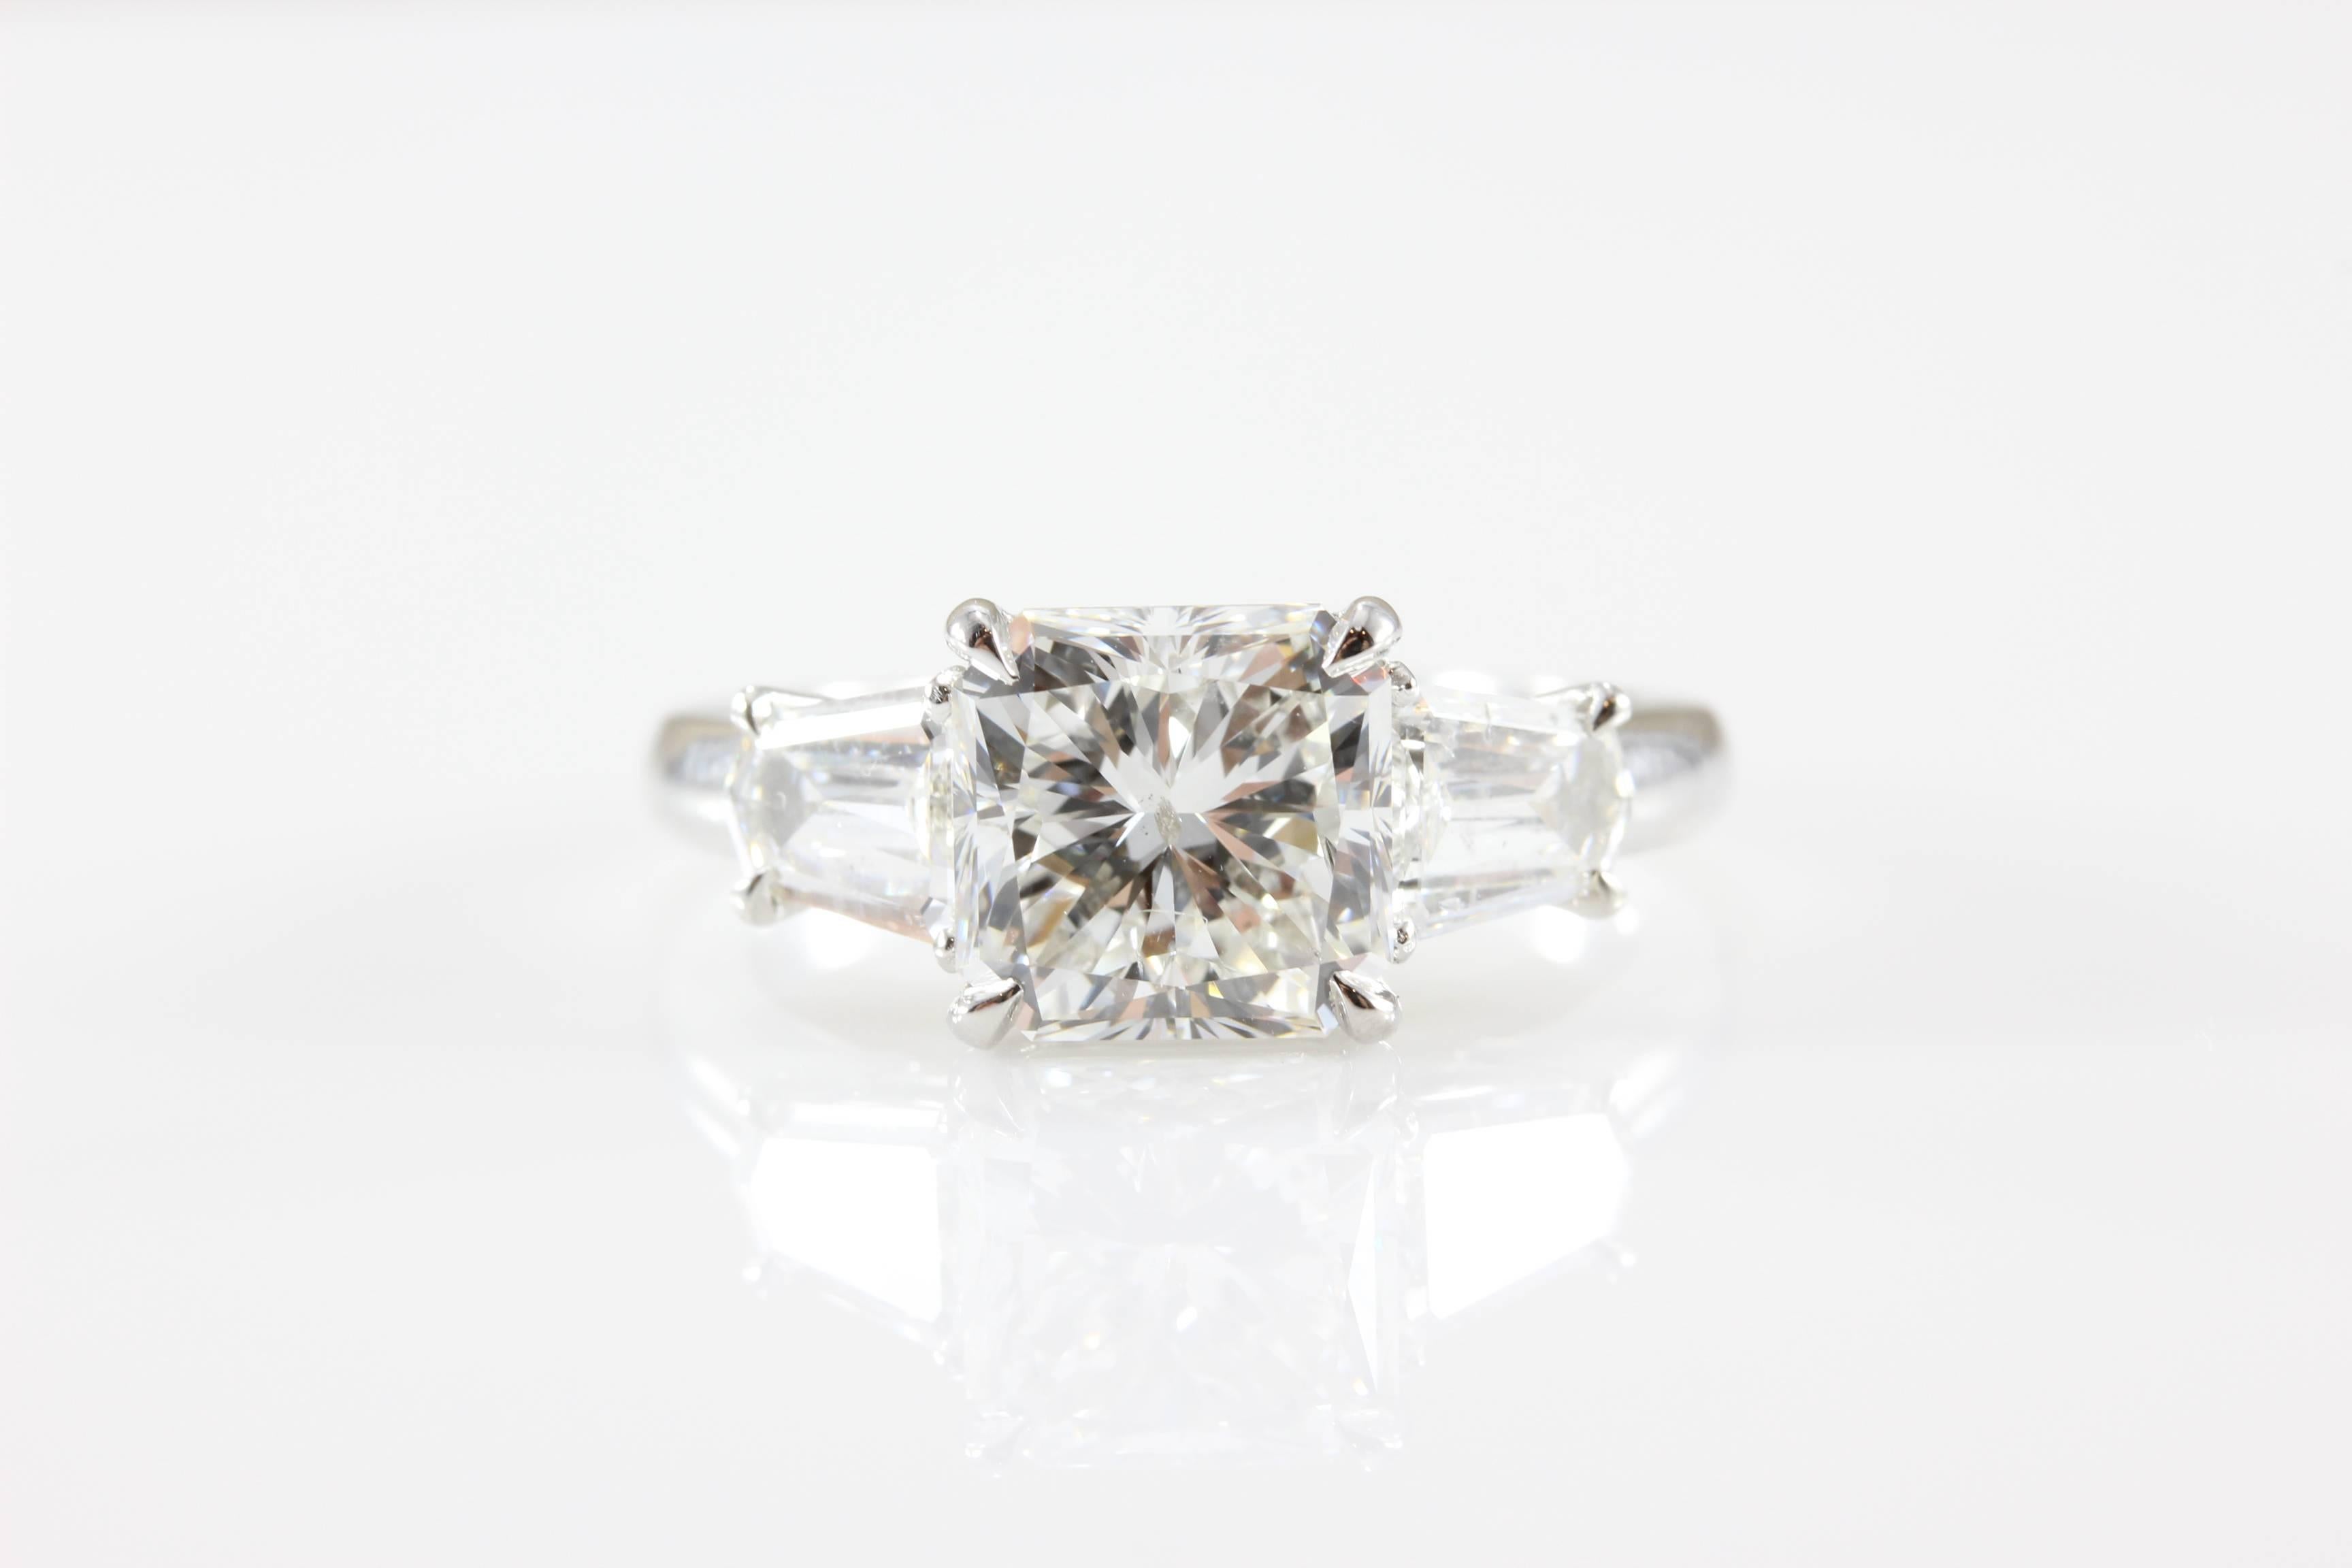 Ein spektakulärer Diamant mit 3,22 Karat im Brillantschliff ist modern mit zwei seitlichen Diamanten im Cadillac-Stil (1,80 Karat) gefasst.  Dieser Diamant mit Strahlenschliff ist durch seine geschliffenen Ecken noch einzigartiger.  Dieser Ring hat